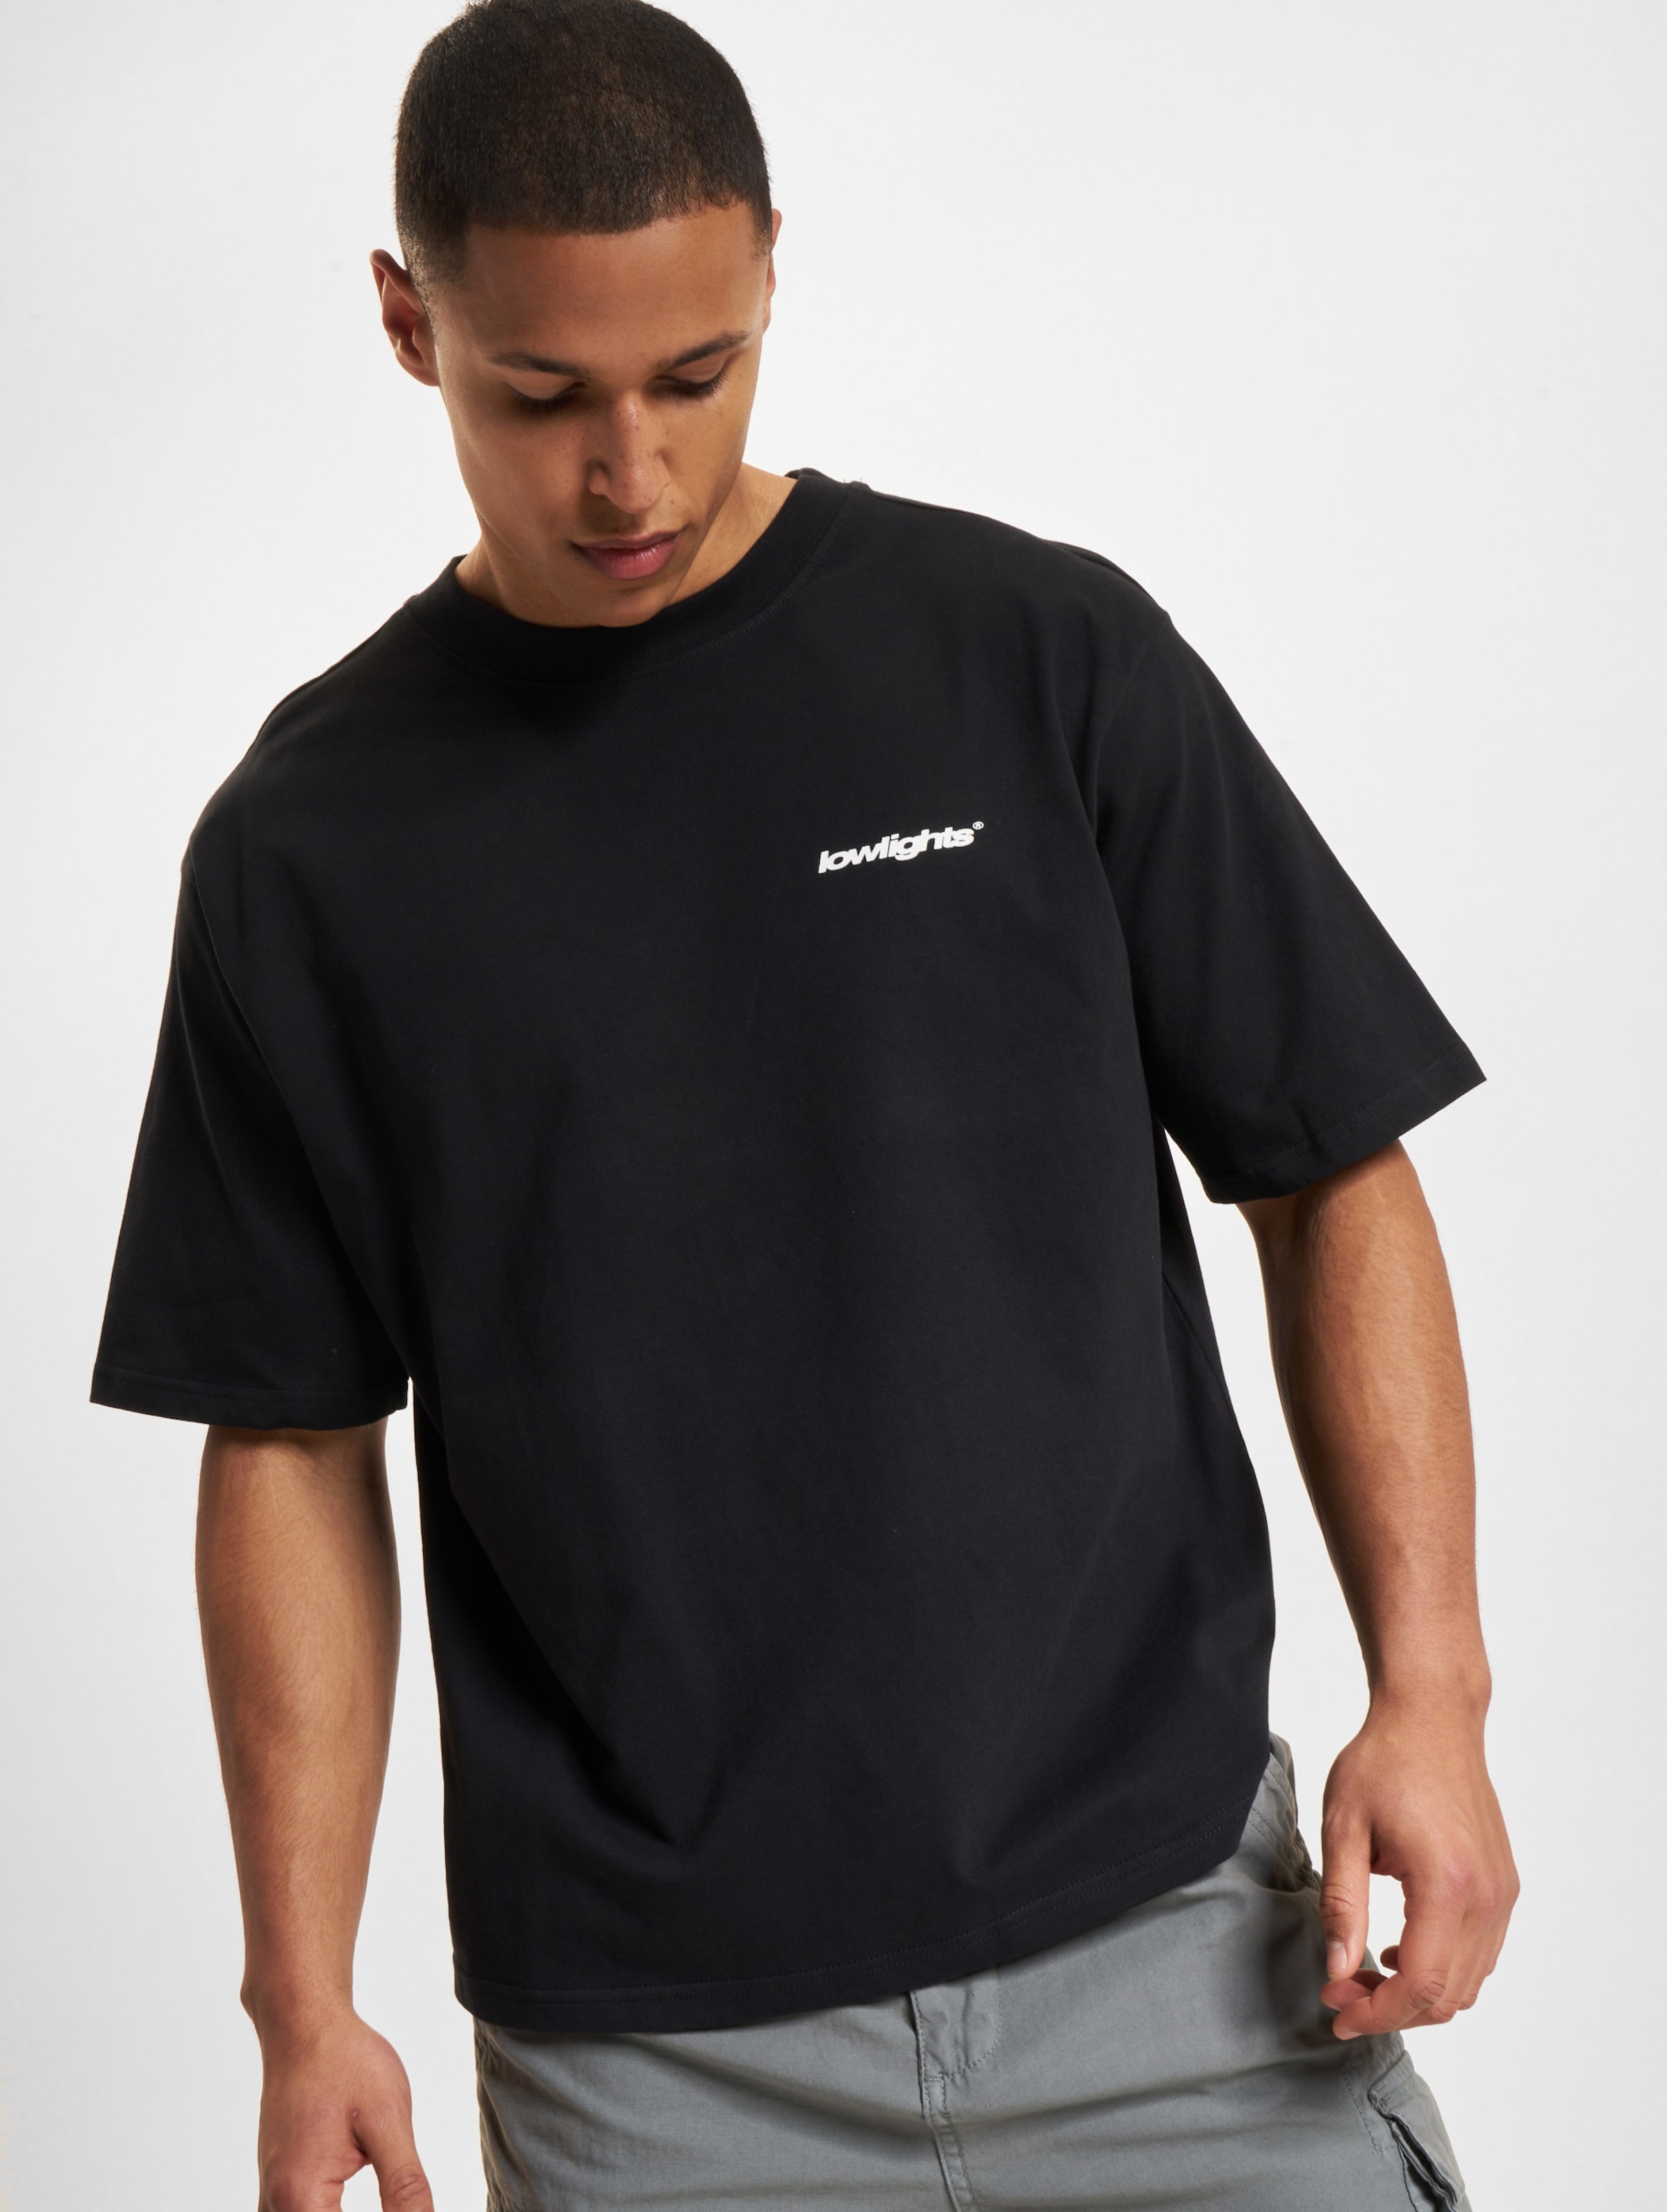 Low Lights Studios Basic T-Shirt black Männer,Unisex op kleur zwart, Maat XS